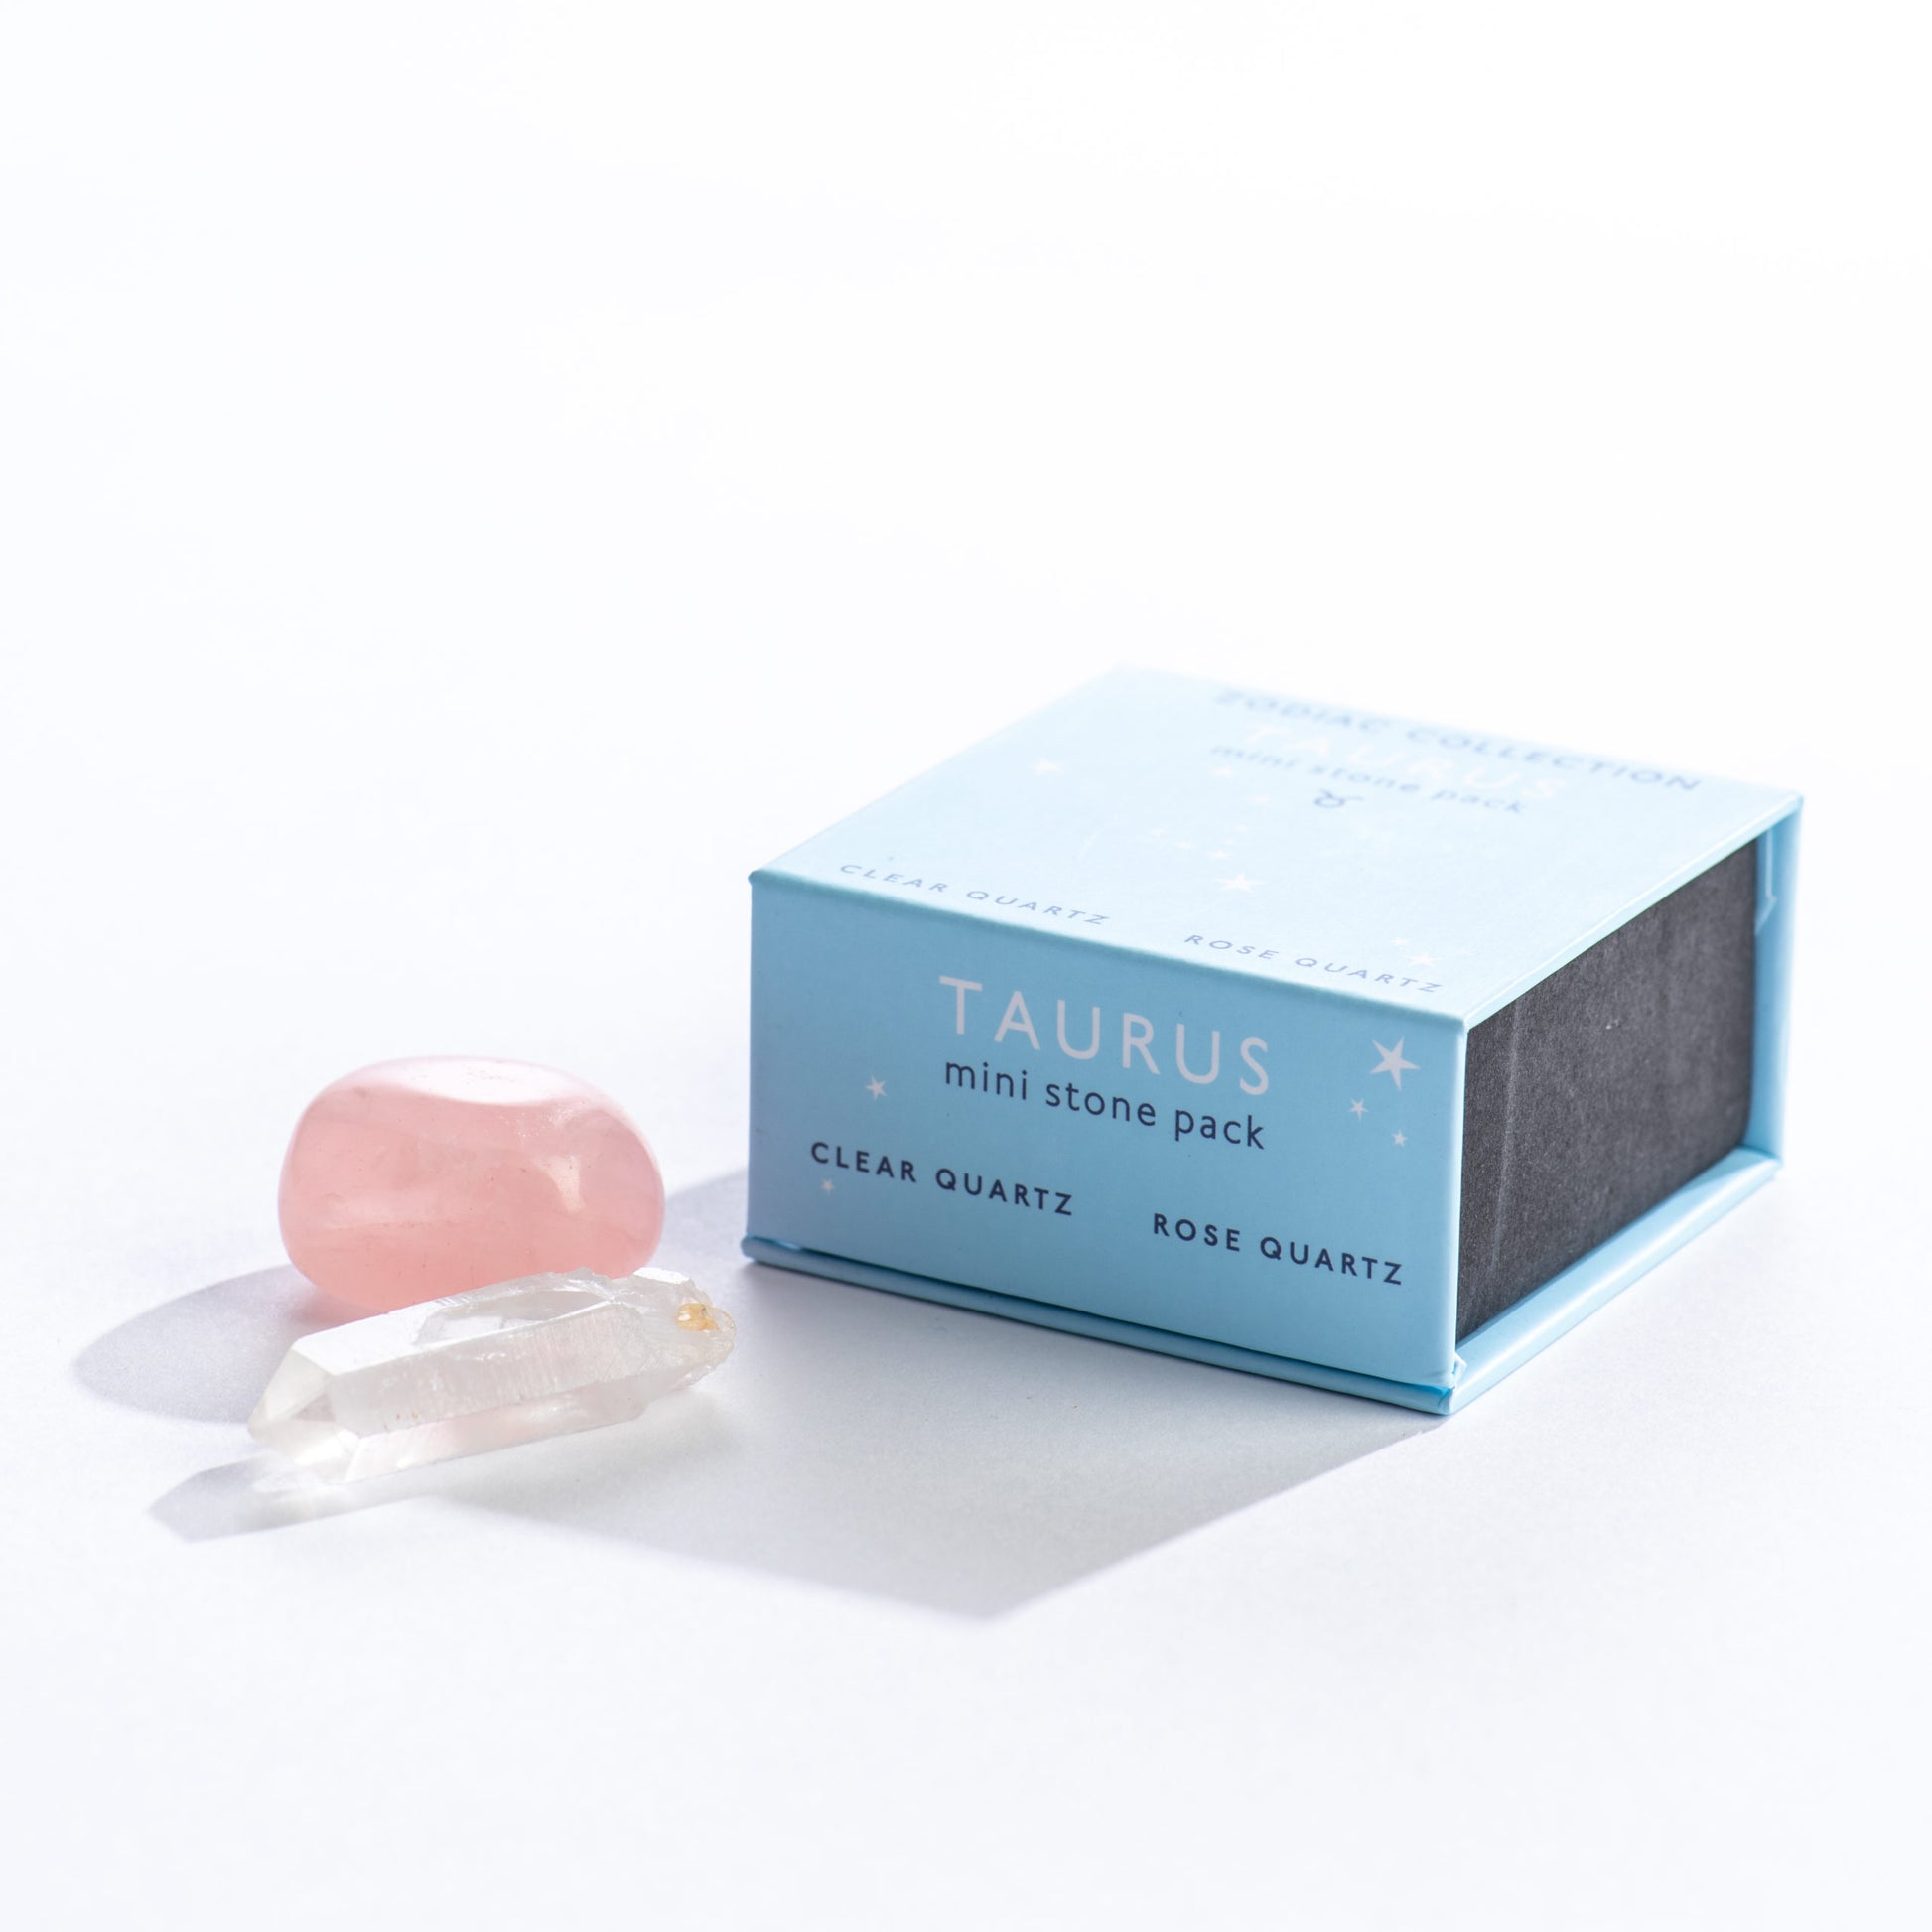 mini box with clear quartz and rose quartz for taurus